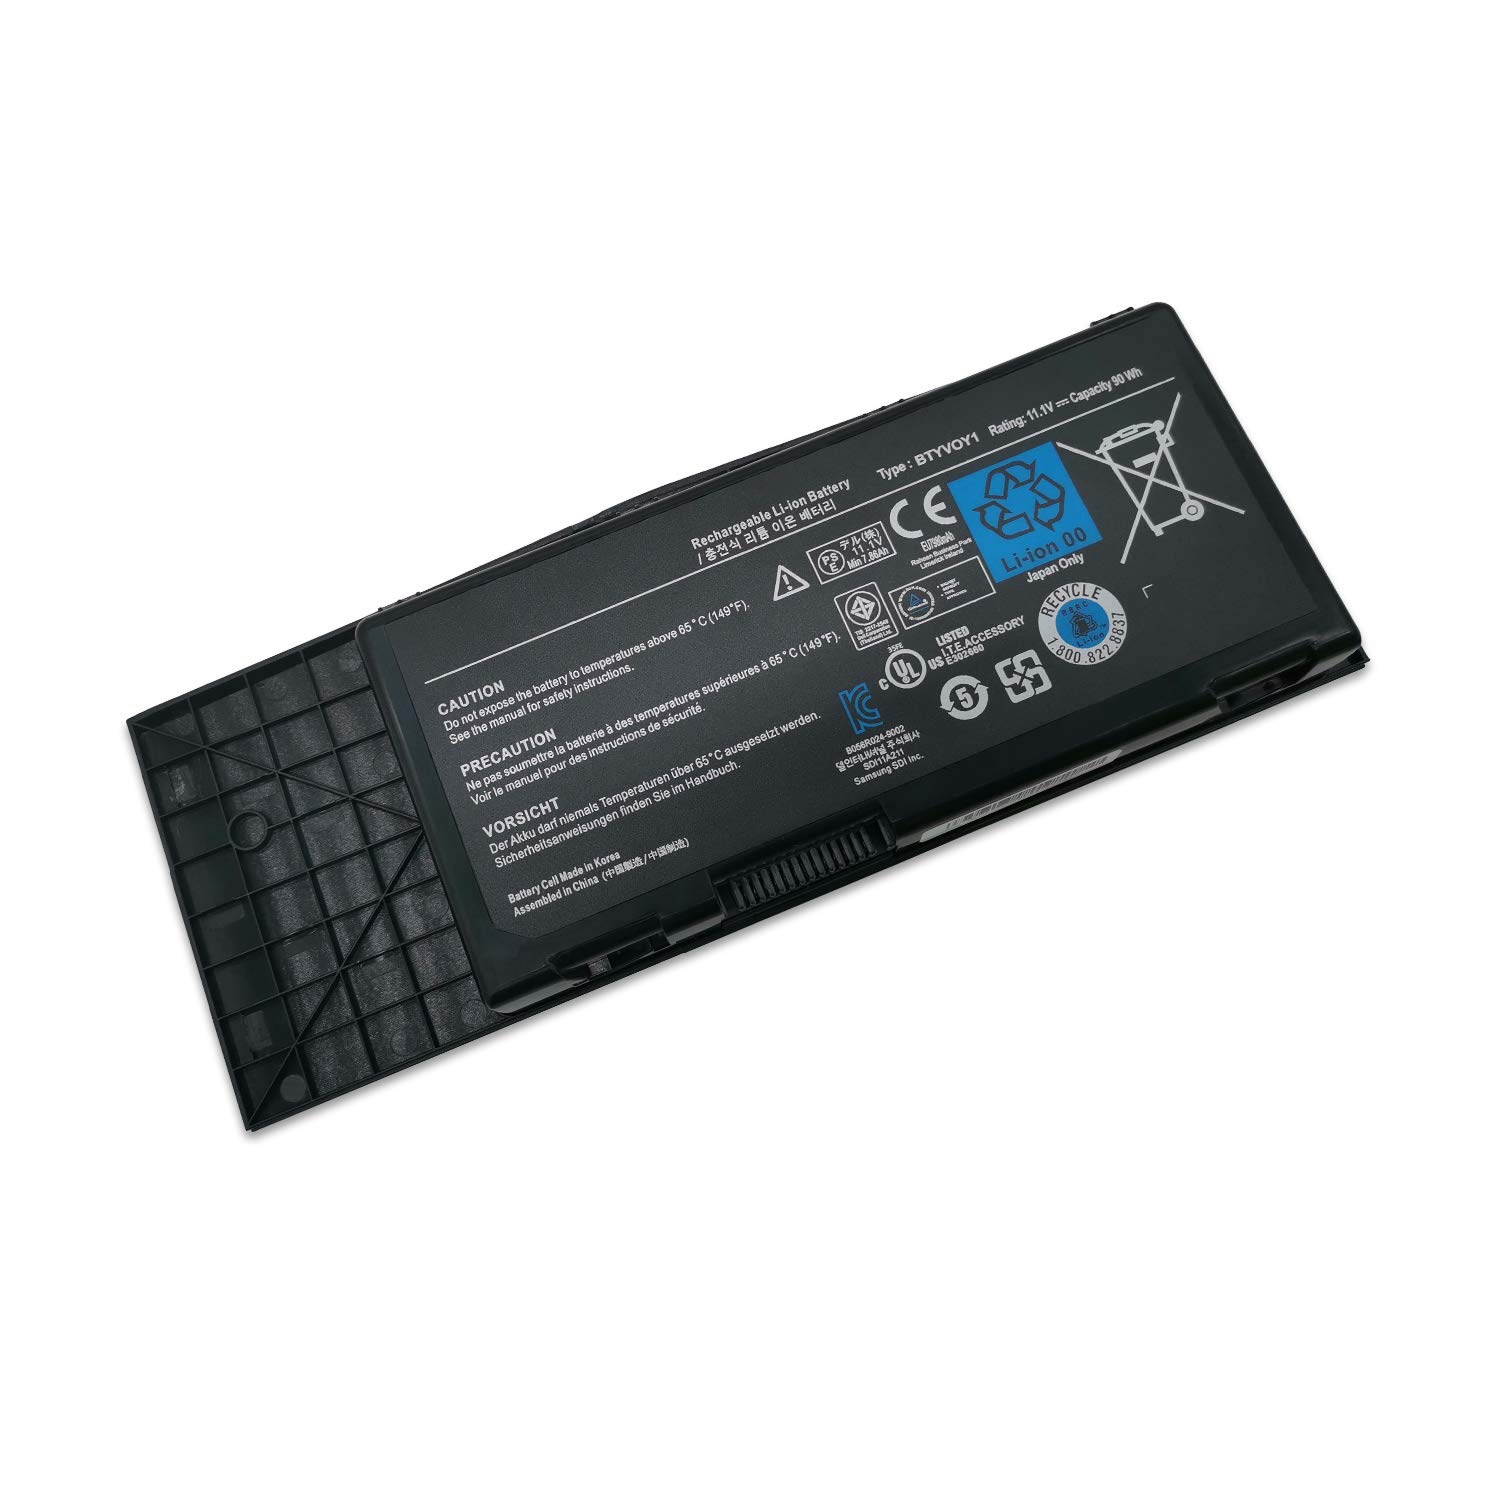 Battery for Dell Alienware M17X-R3,M17X-R4, (7XC9N, 05WP5W)